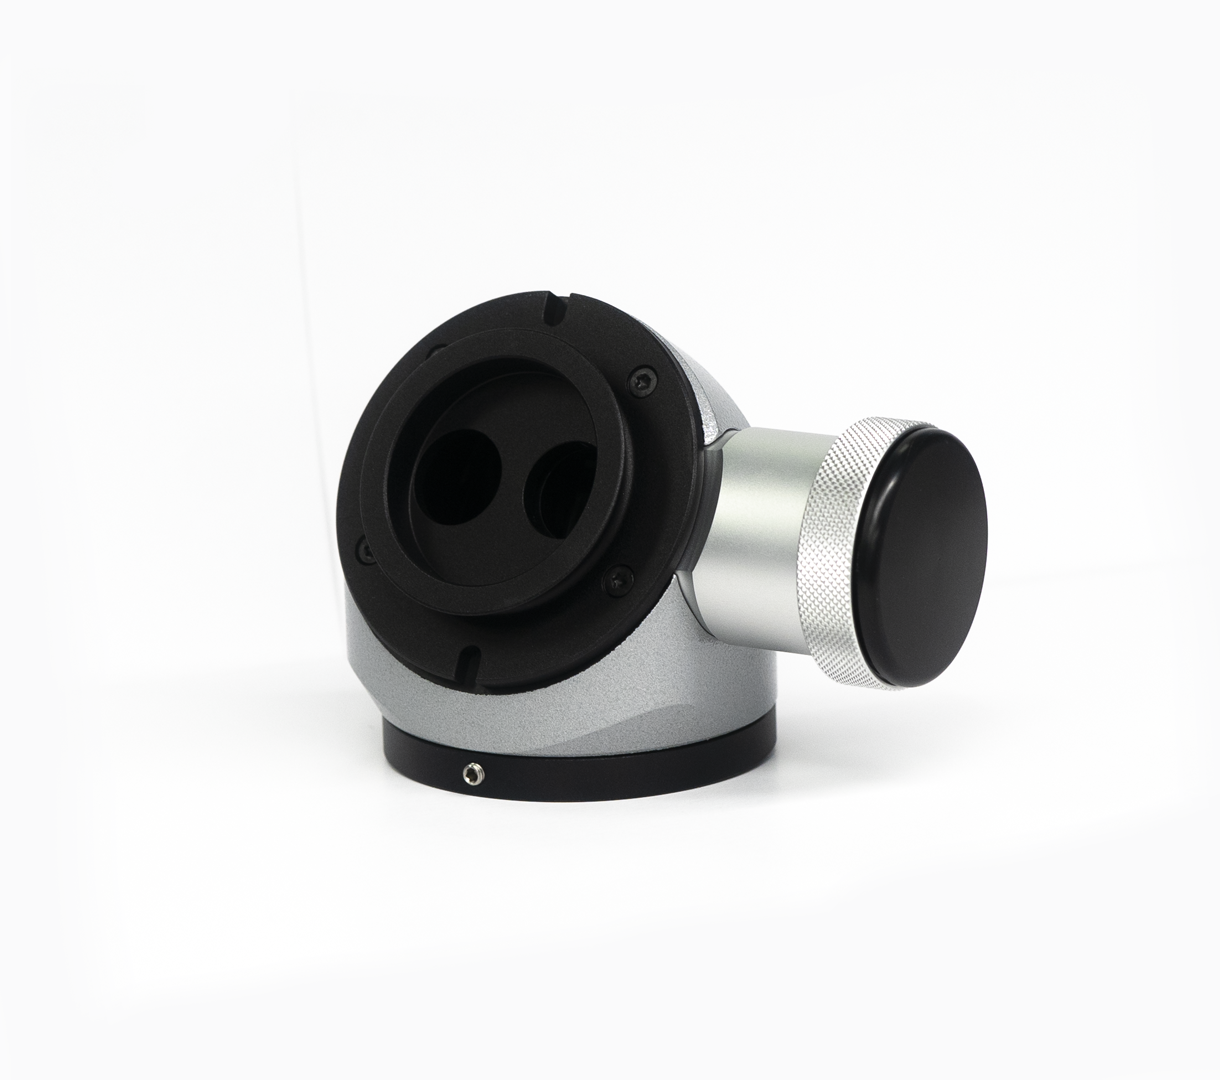 Экстендер с делителем луча с левым/правым/двумя выходами для микроскопа Leica M320